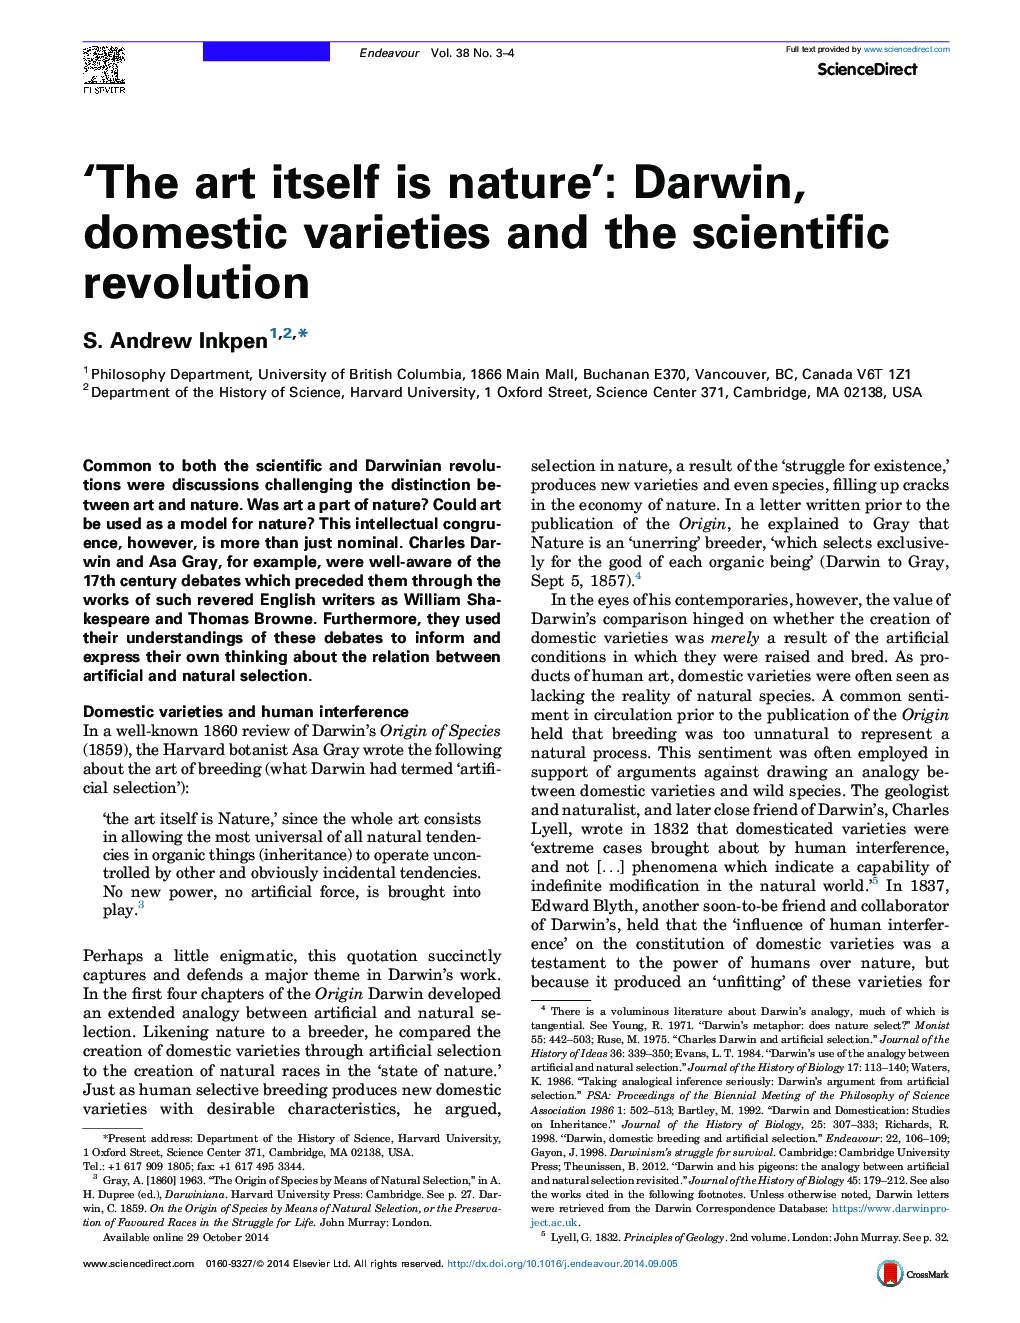 هنر خود طبیعت است: داروین، گونه های داخلی و انقلاب علمی 